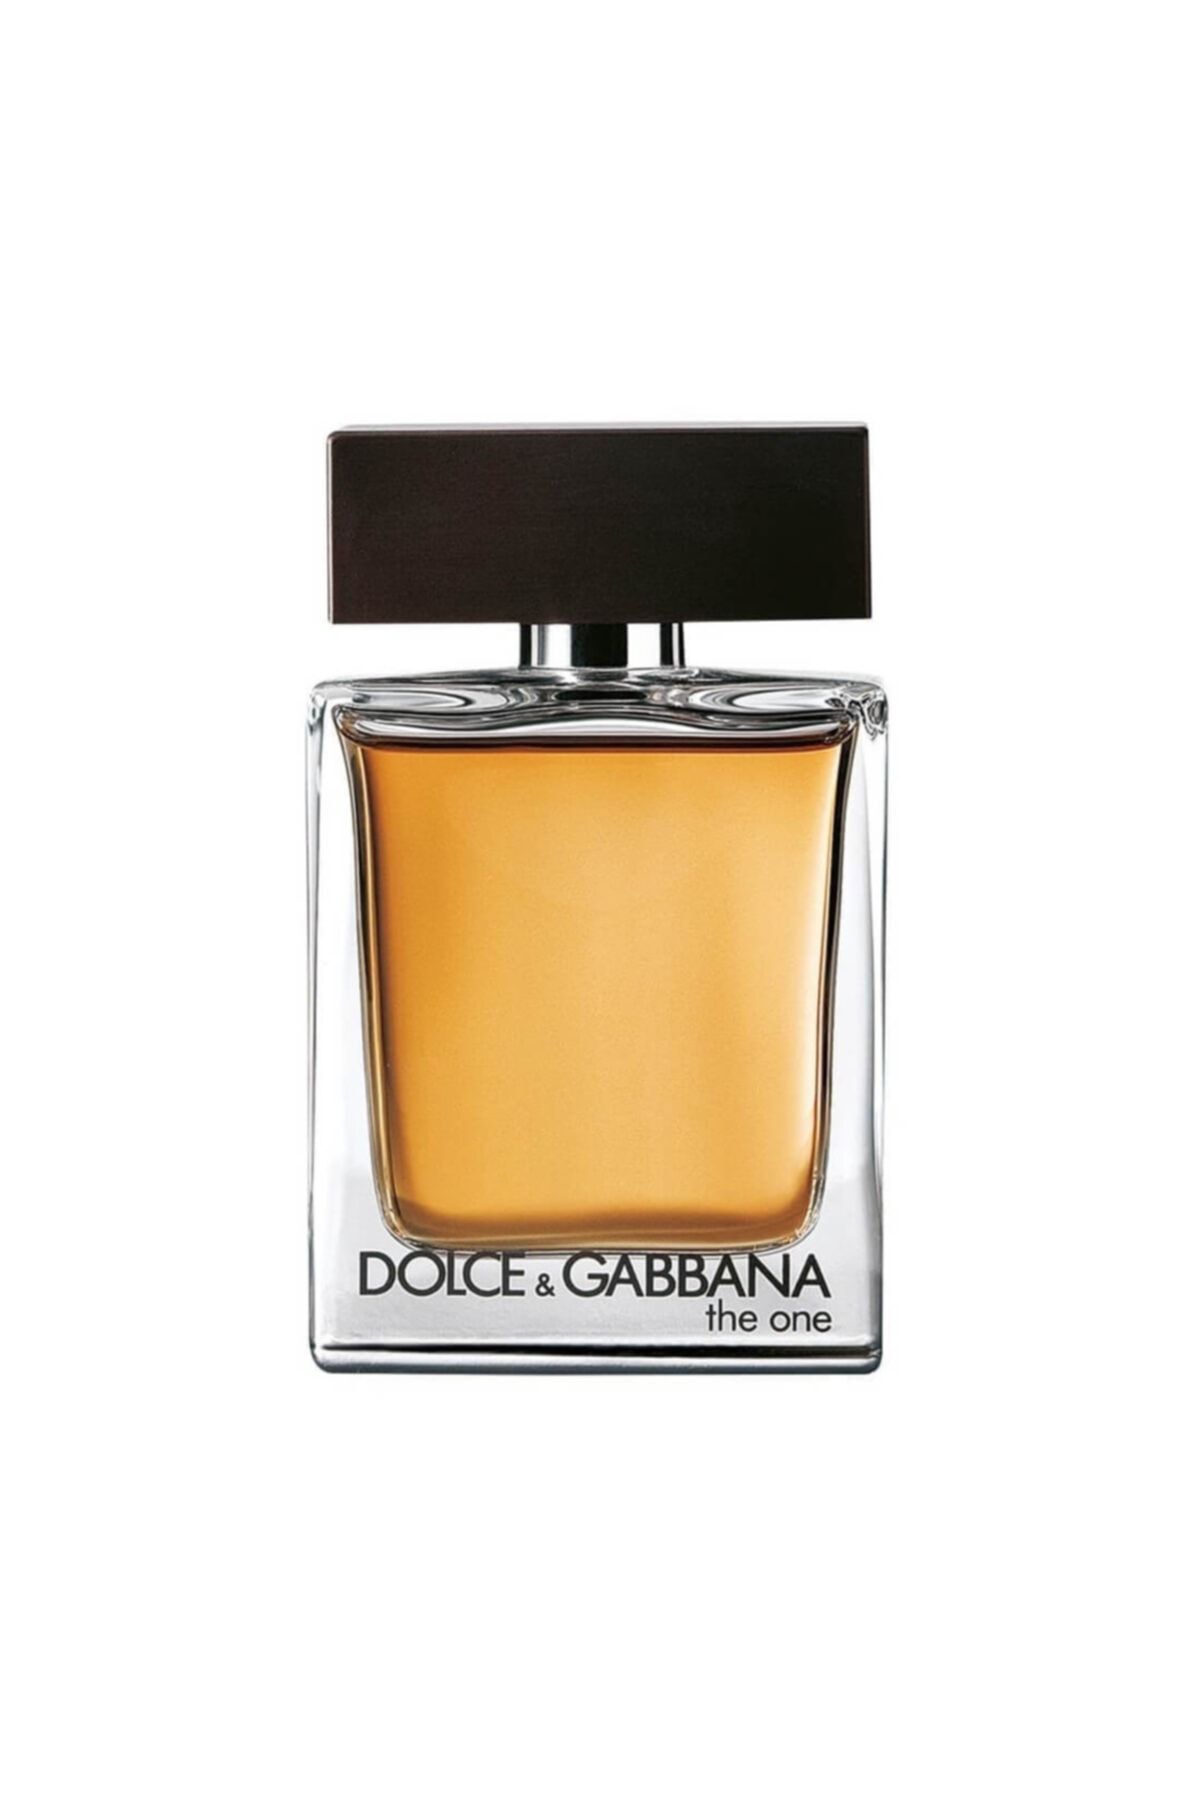 Dolce&Gabbana The One Edt 50 ml Erkek Parfüm 3423473021230 Fiyatı ...